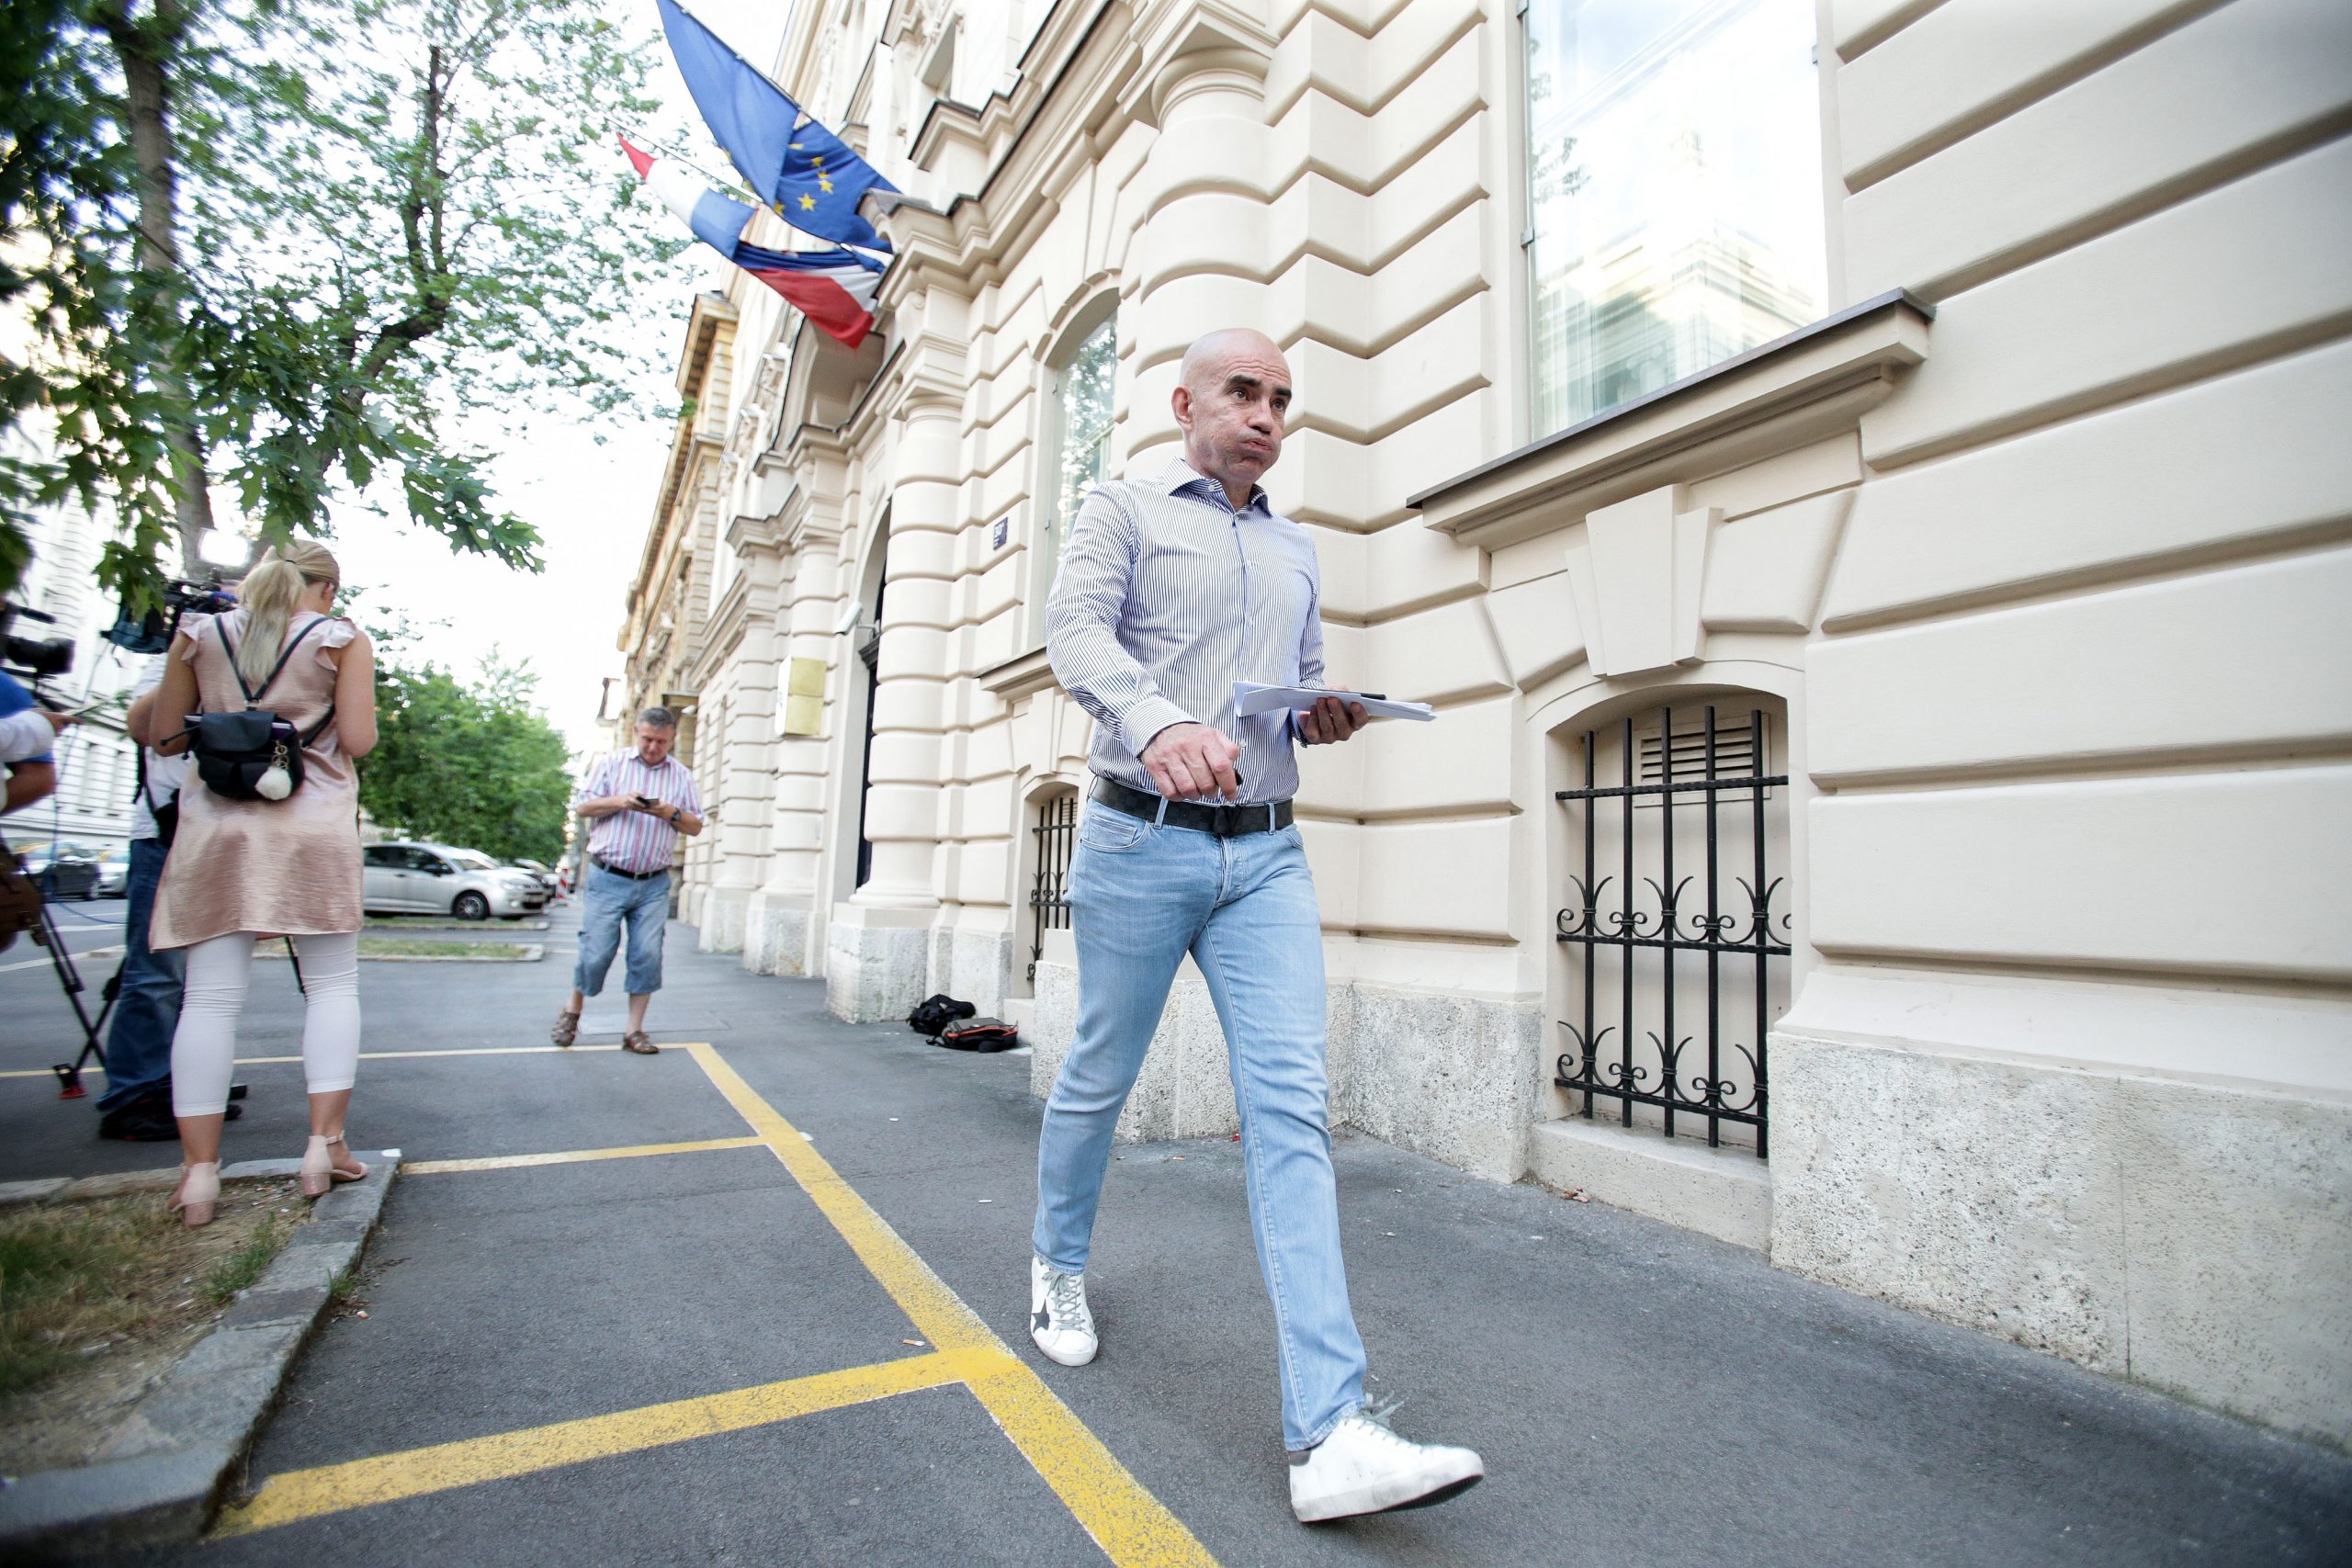 05.07.2019., Zagreb - Ljubo Pavasovic Viskovic izlazi iz USKOK-a nakon sto su obavljenja ispitivanja njegovih klijenata. Photo: Filip Kos/PIXSELL